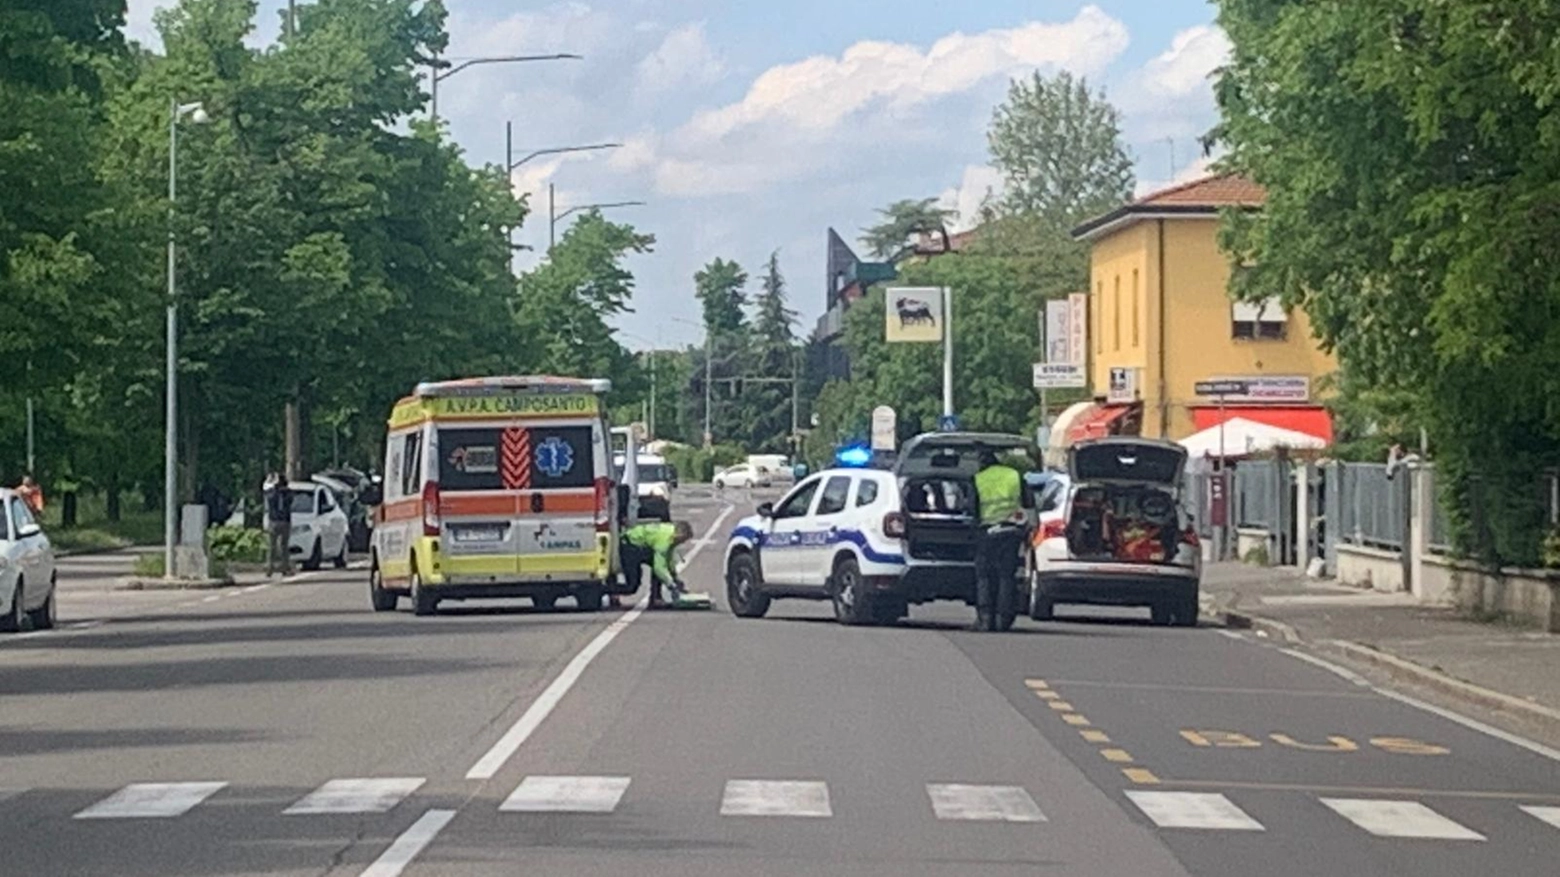 Polizia locale in via Emilia Ovest dove si è verificato il grave incidente